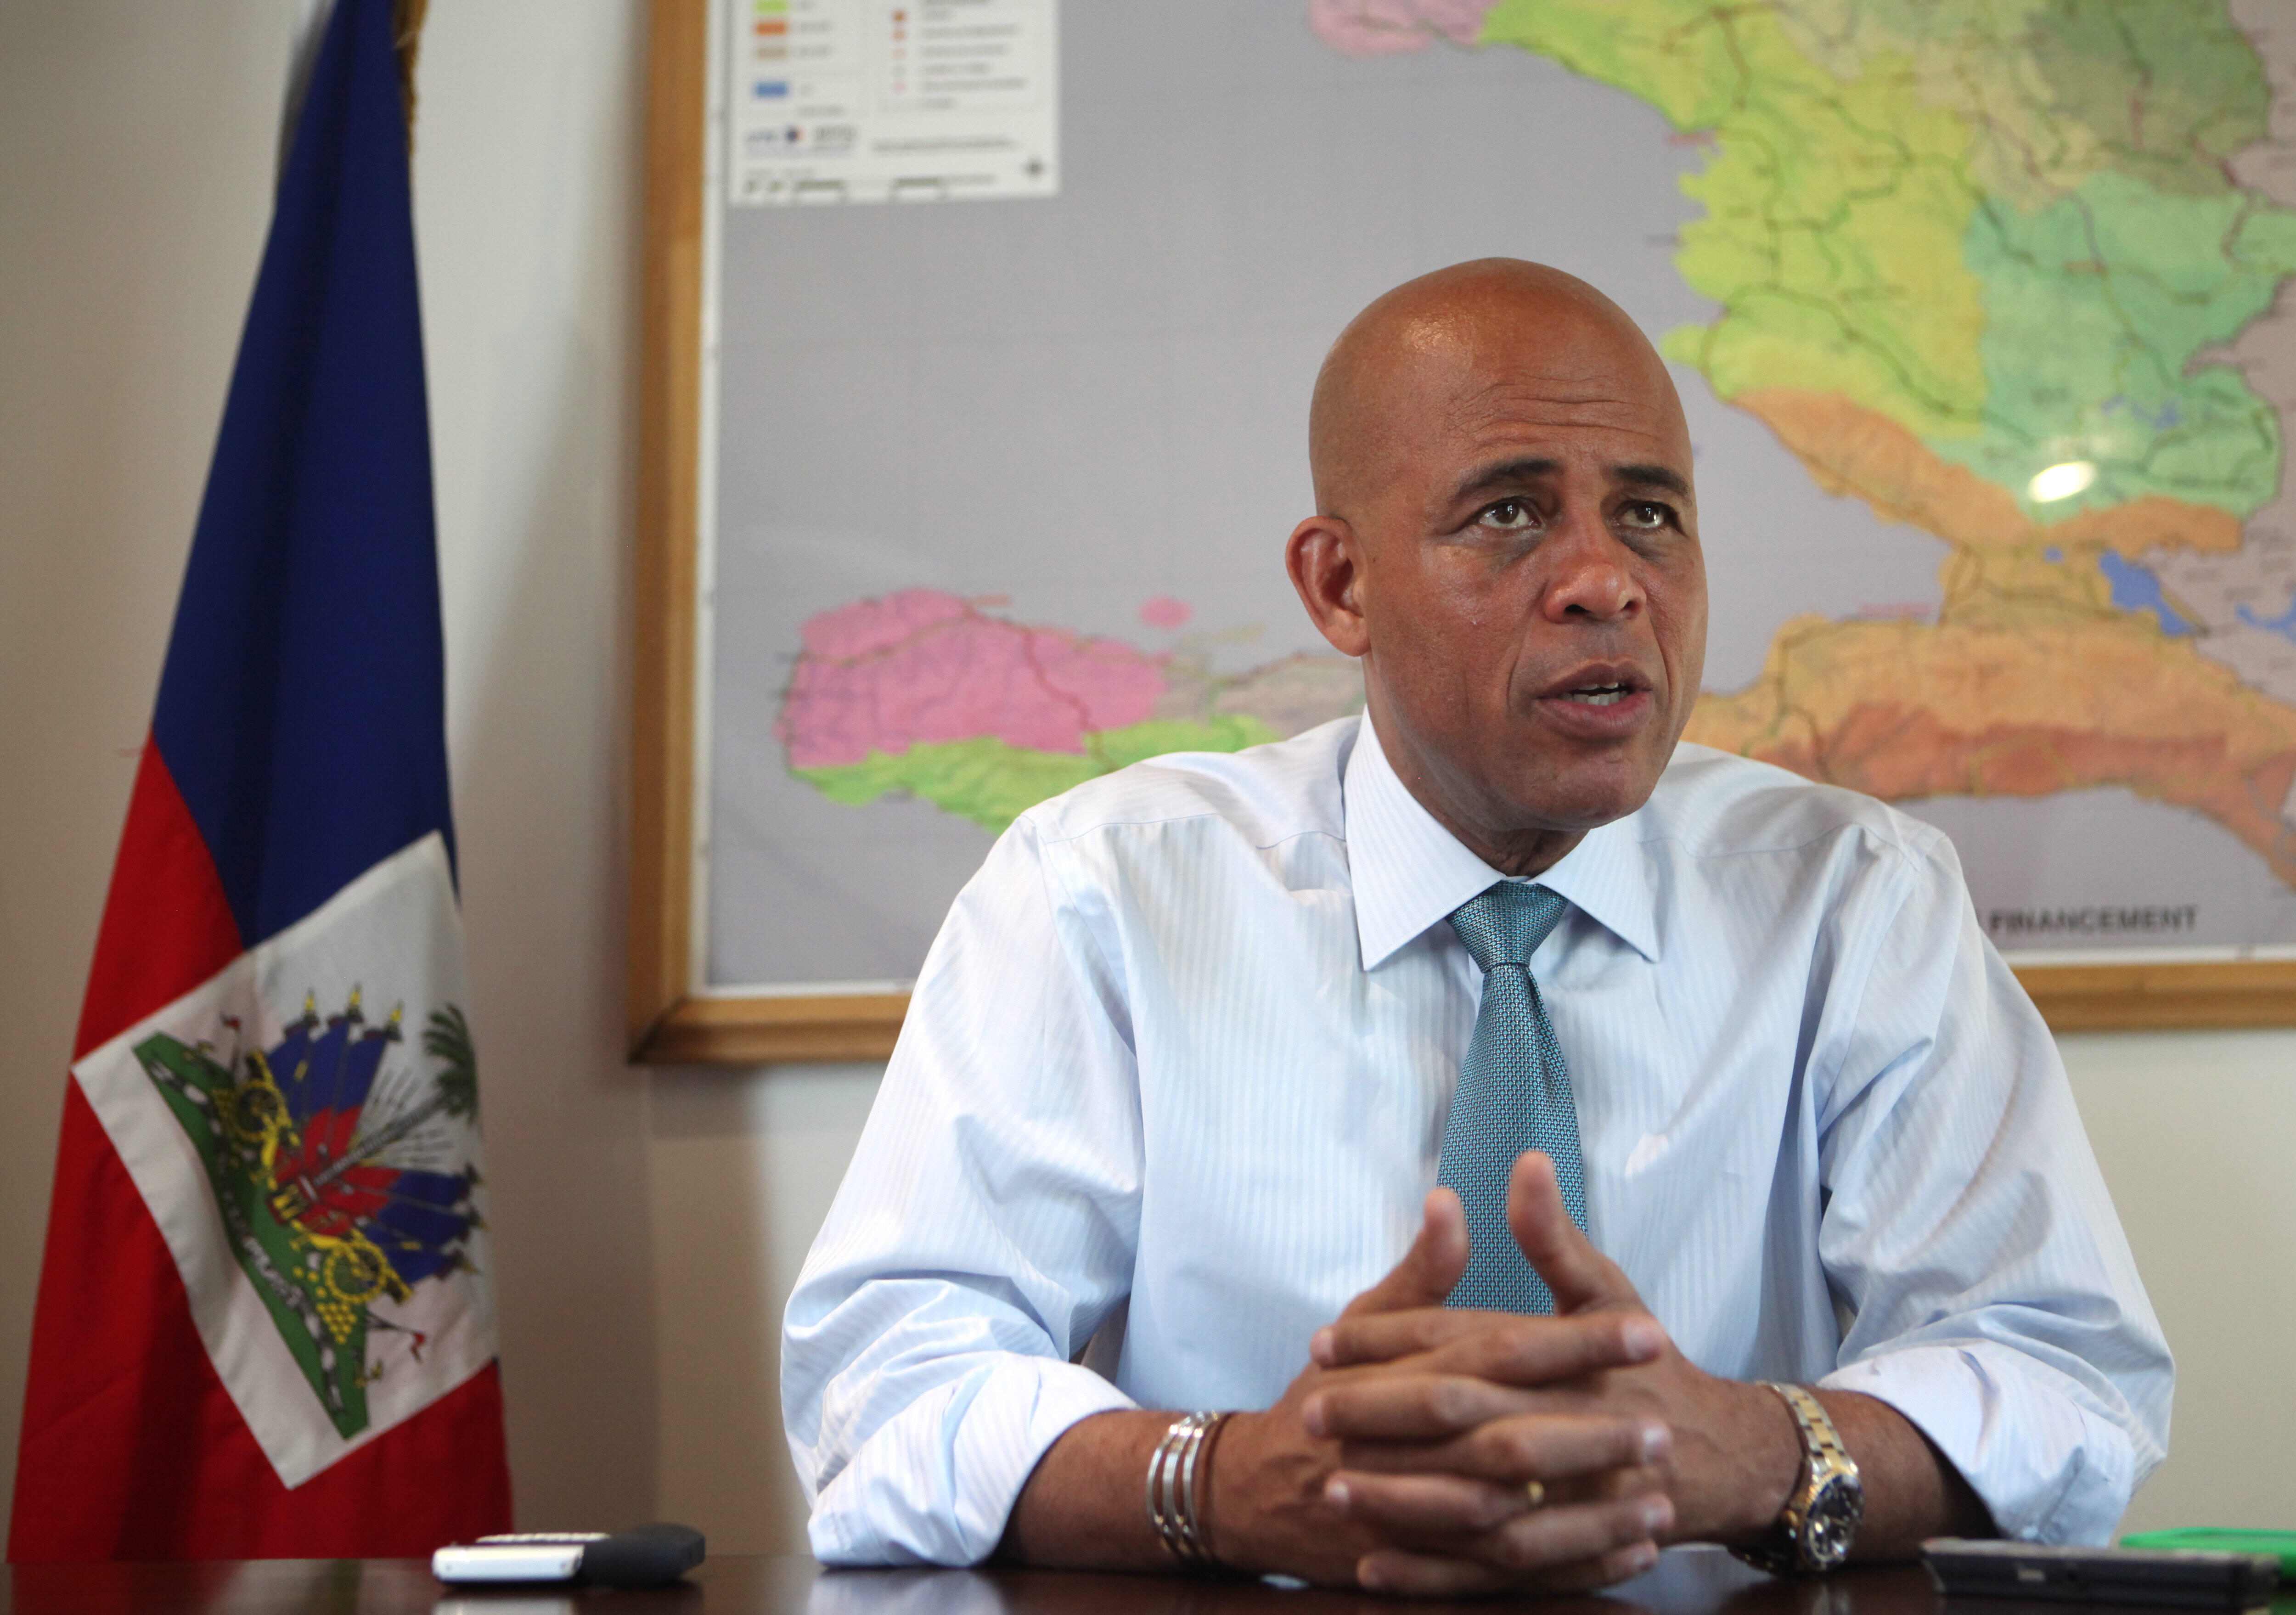 El presidente Michell Martelly dejará el cargo este domingo como se tenía previsto.